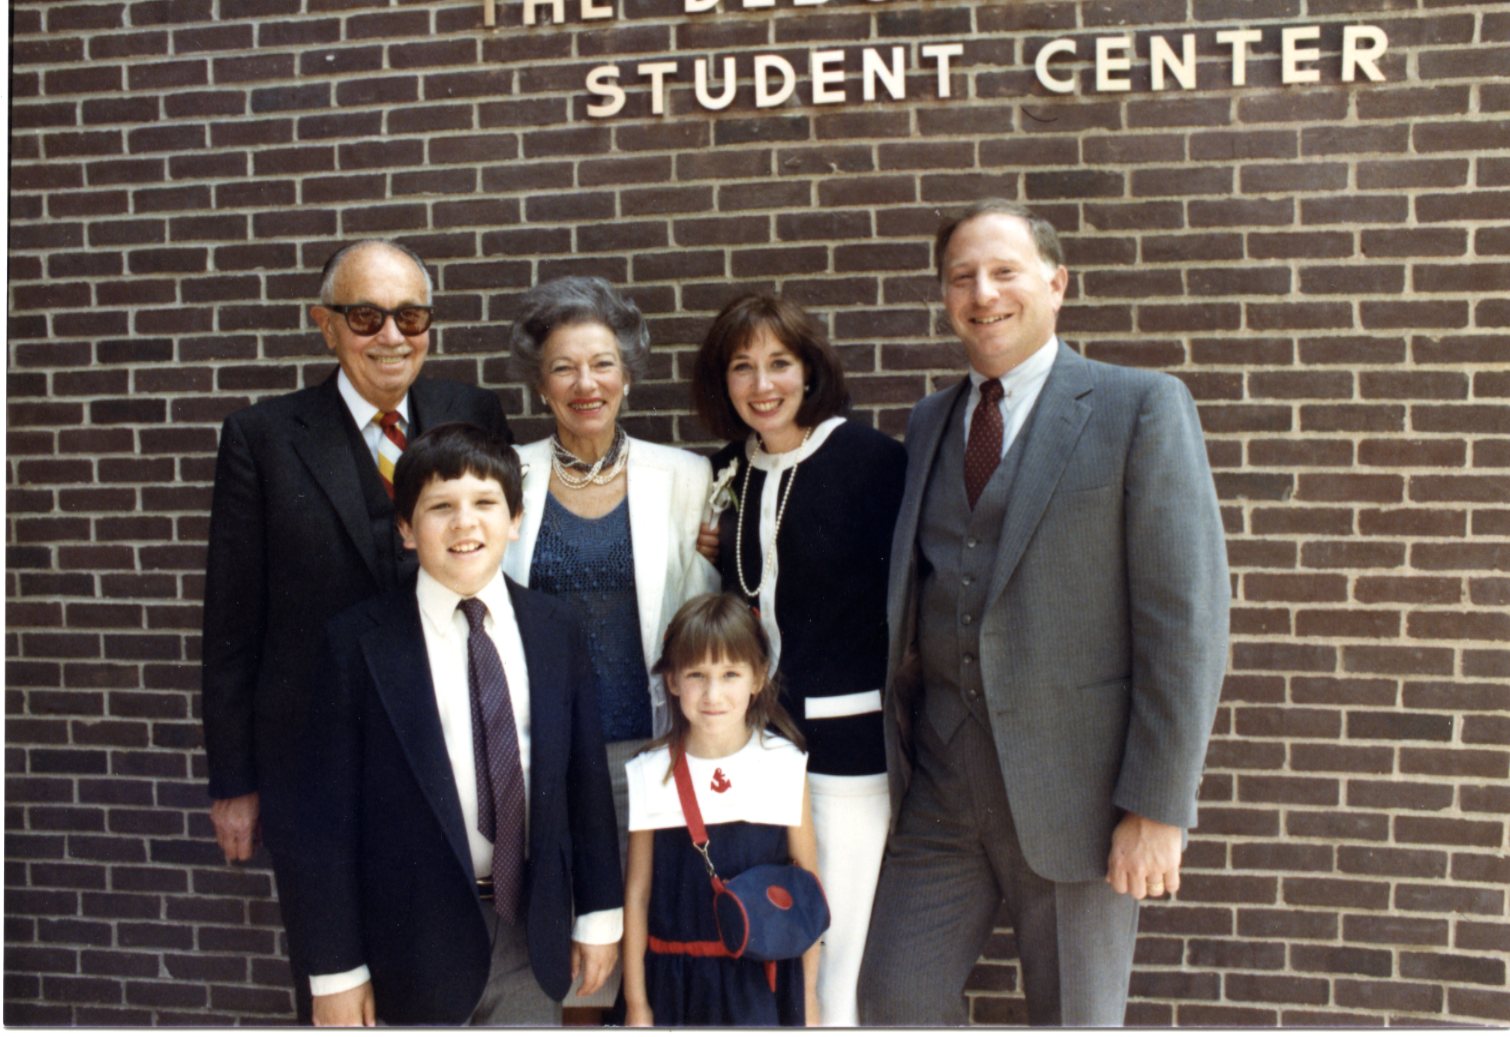 From left: Jack Schwartz, Steve Raizes, Billie Schwartz, Liz Raizes, Deborah Schwartz Raizes and Gary Raizes